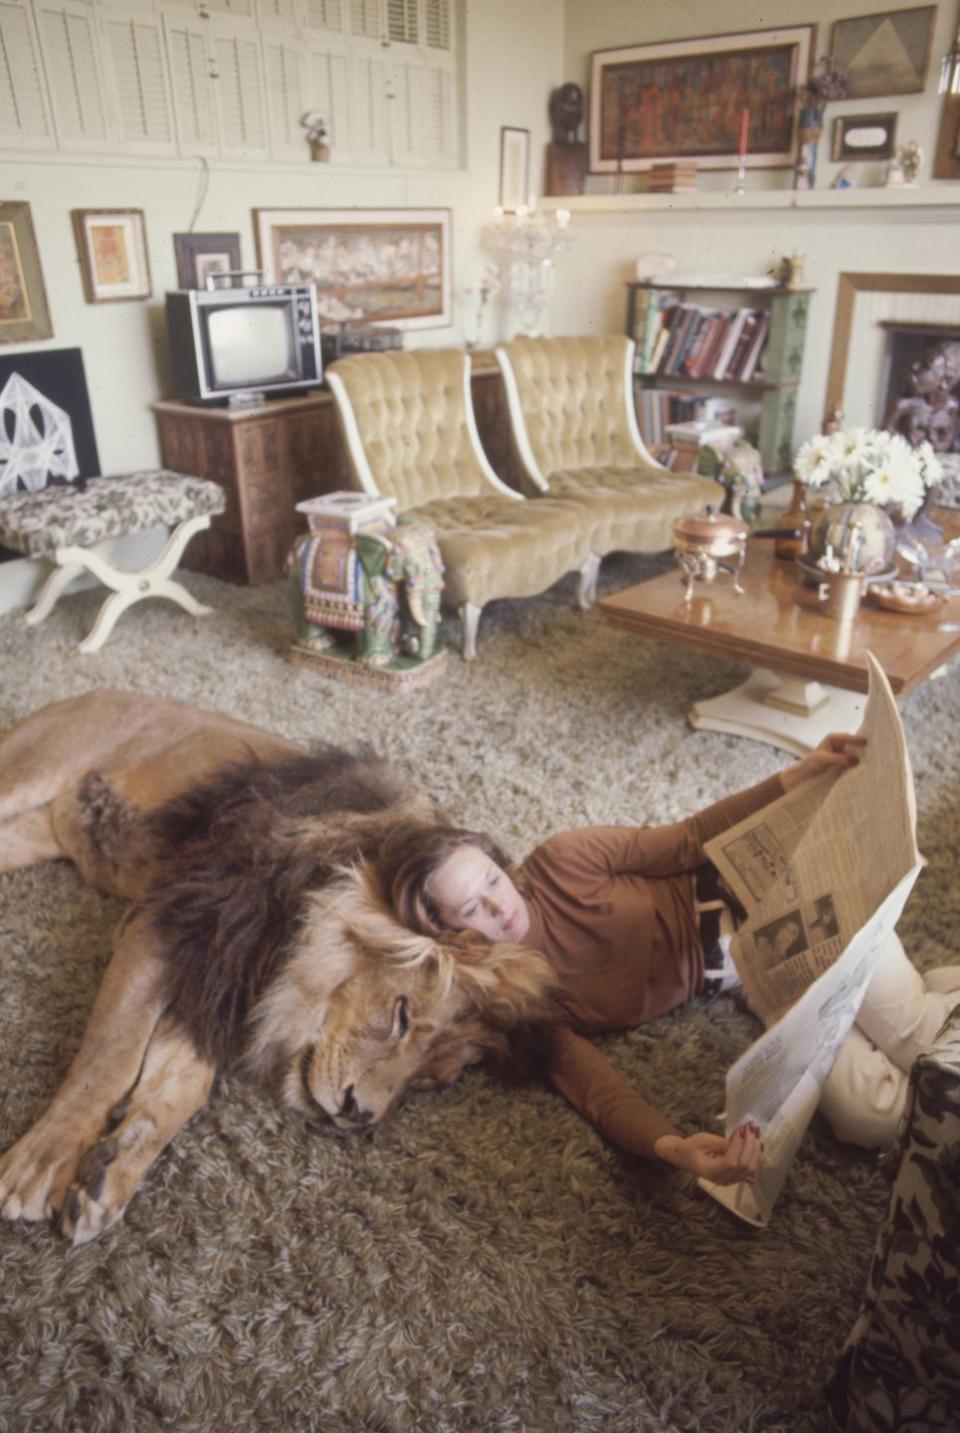 1971: Tippi Hedren and Her Lion